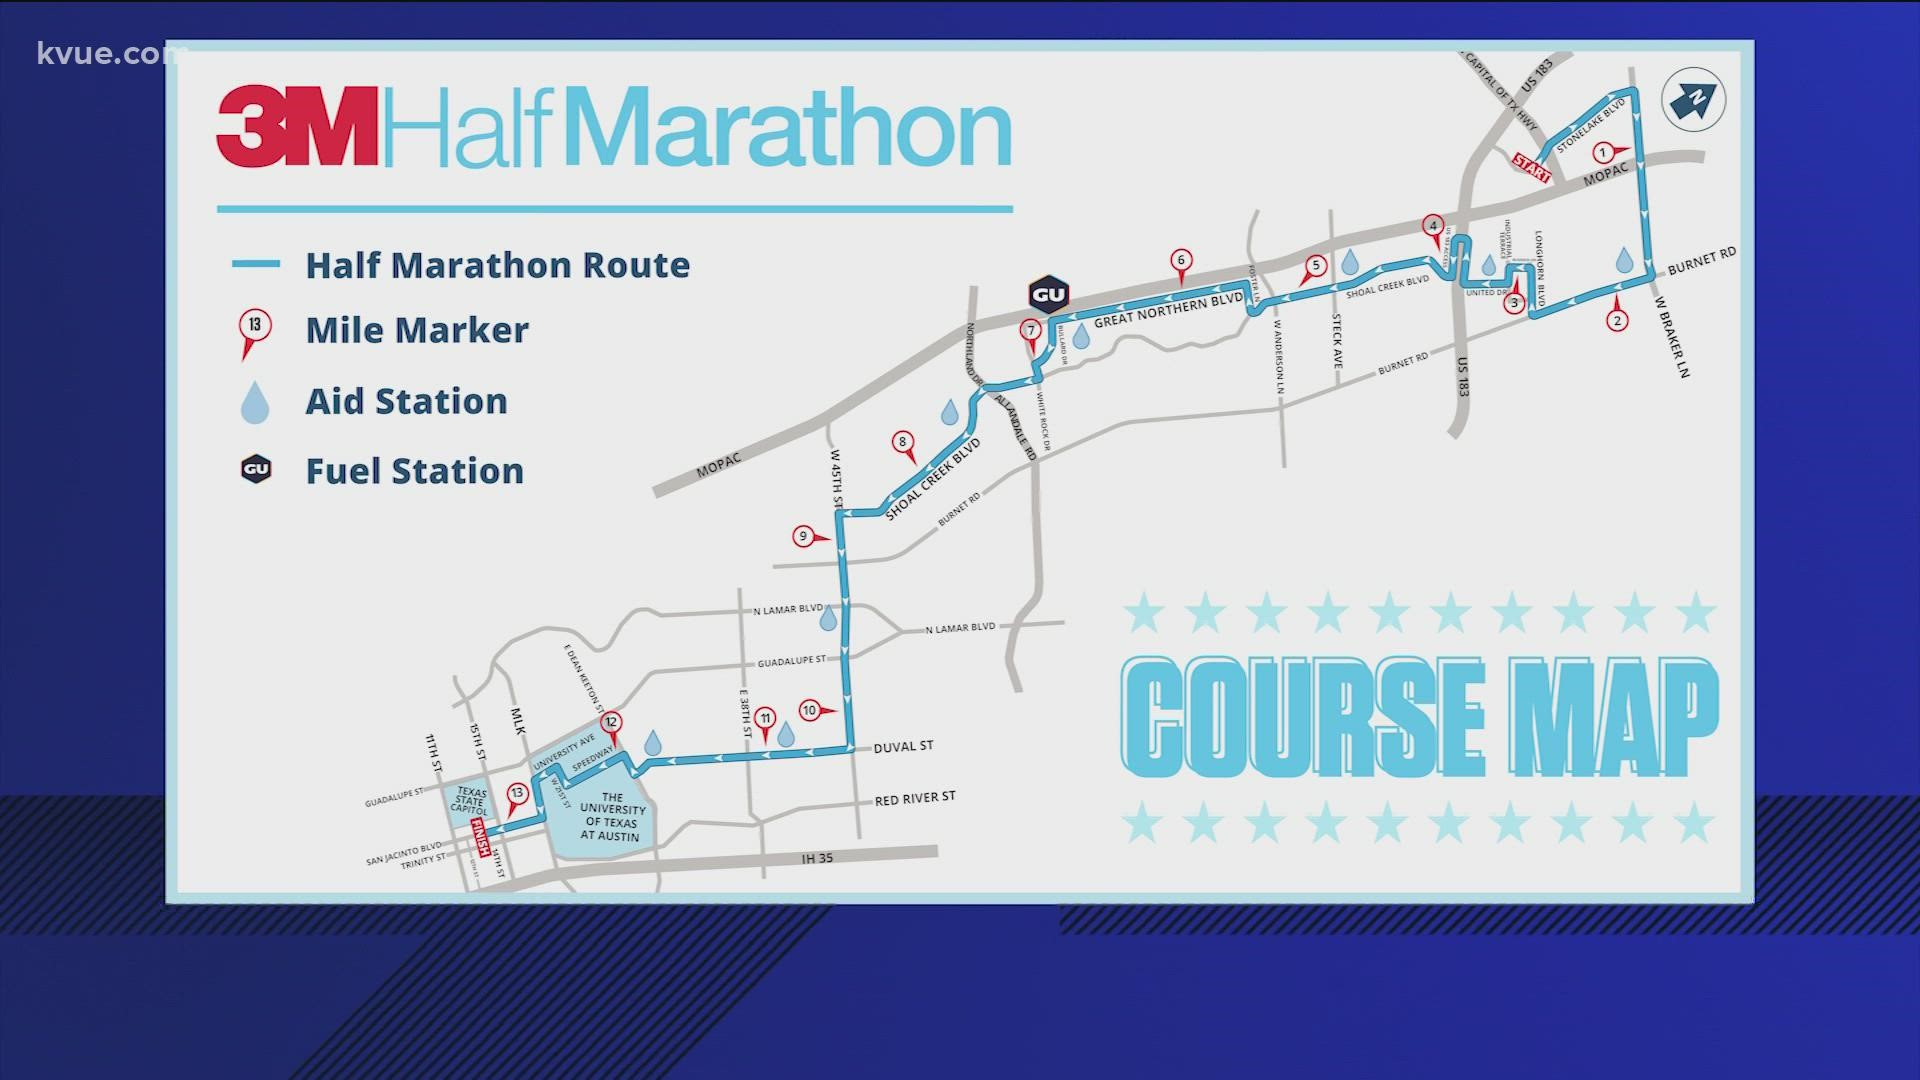 3M Half Marathon is back in Austin on Jan. 23, 2022